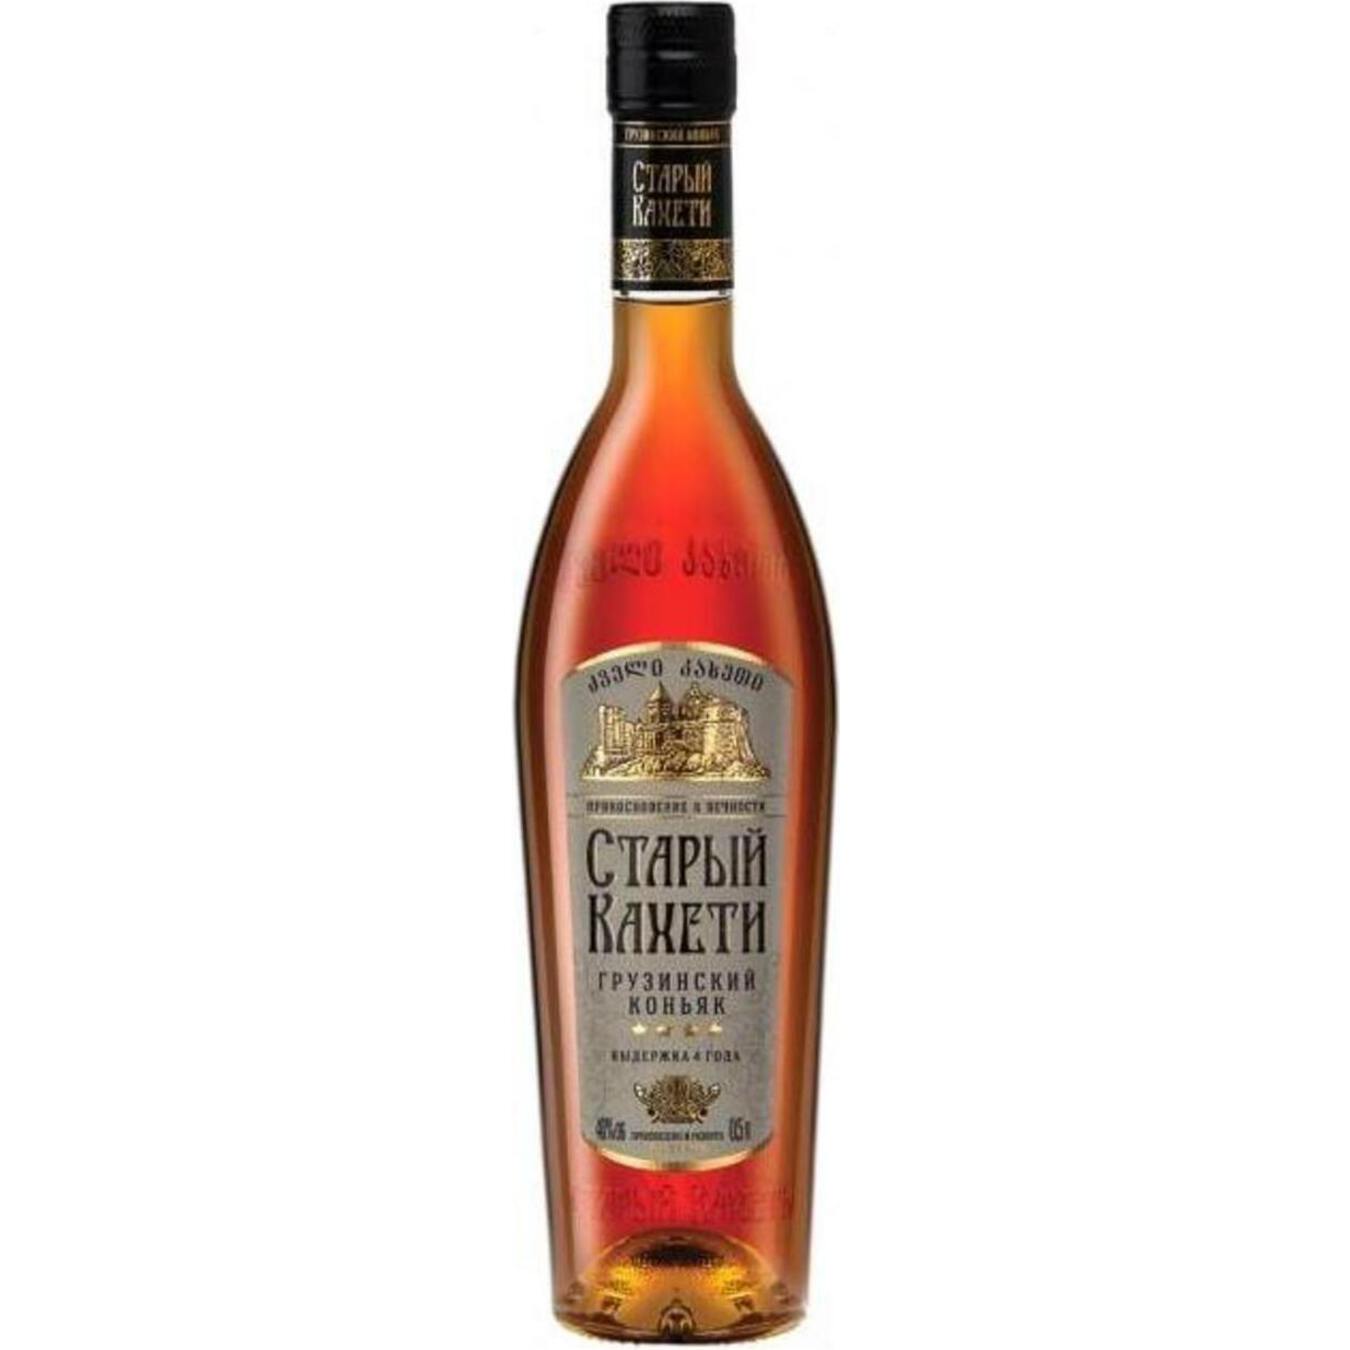 Staryi Kakheti 4 stars Cognac 40% 0,5l